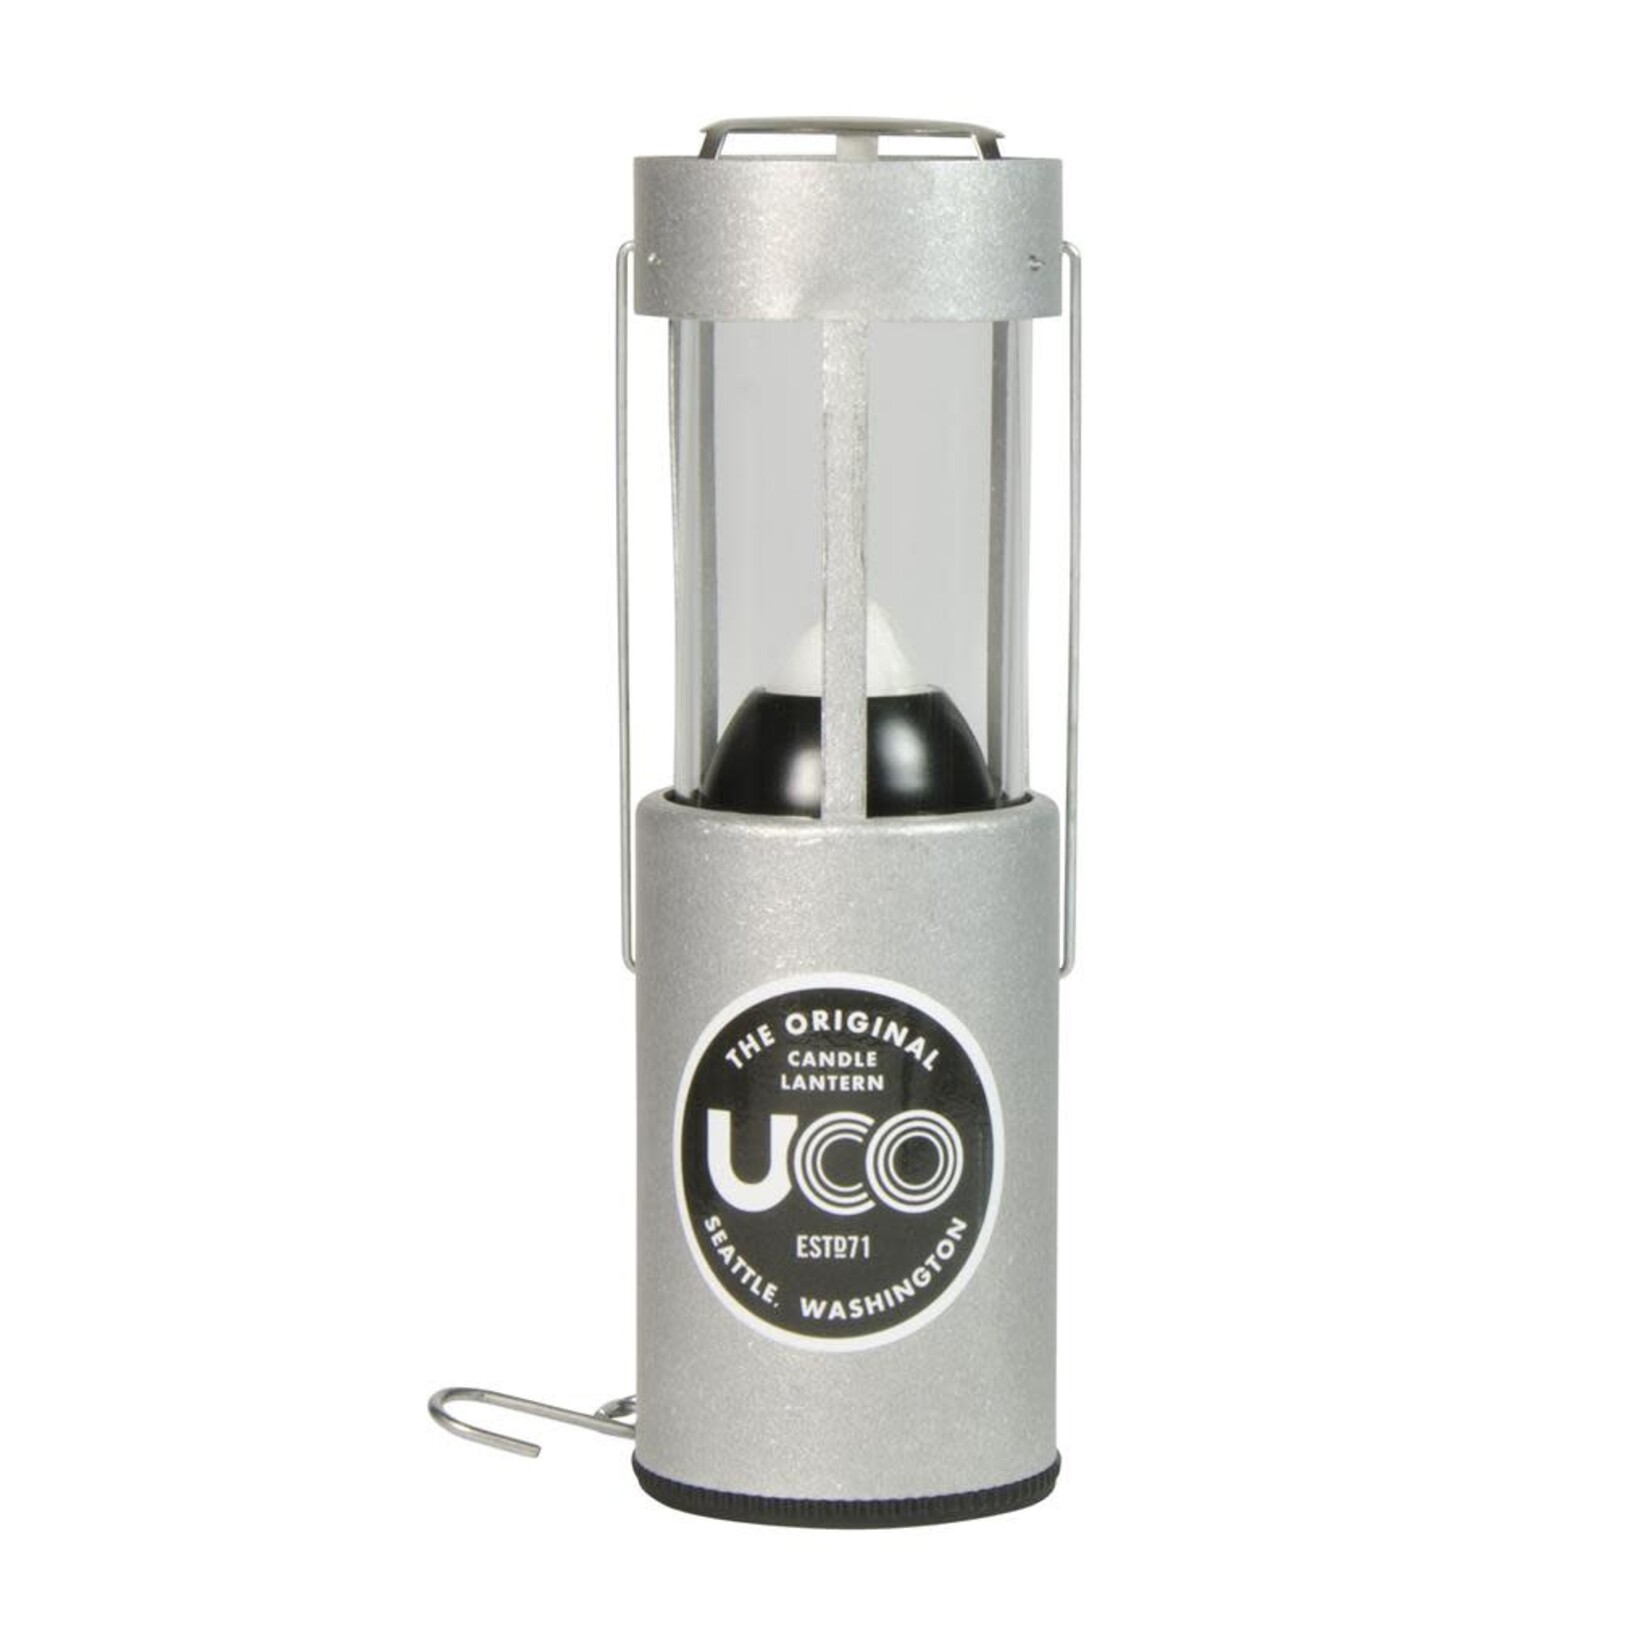 Lanterne originale pour chandelle UCO Aluminium